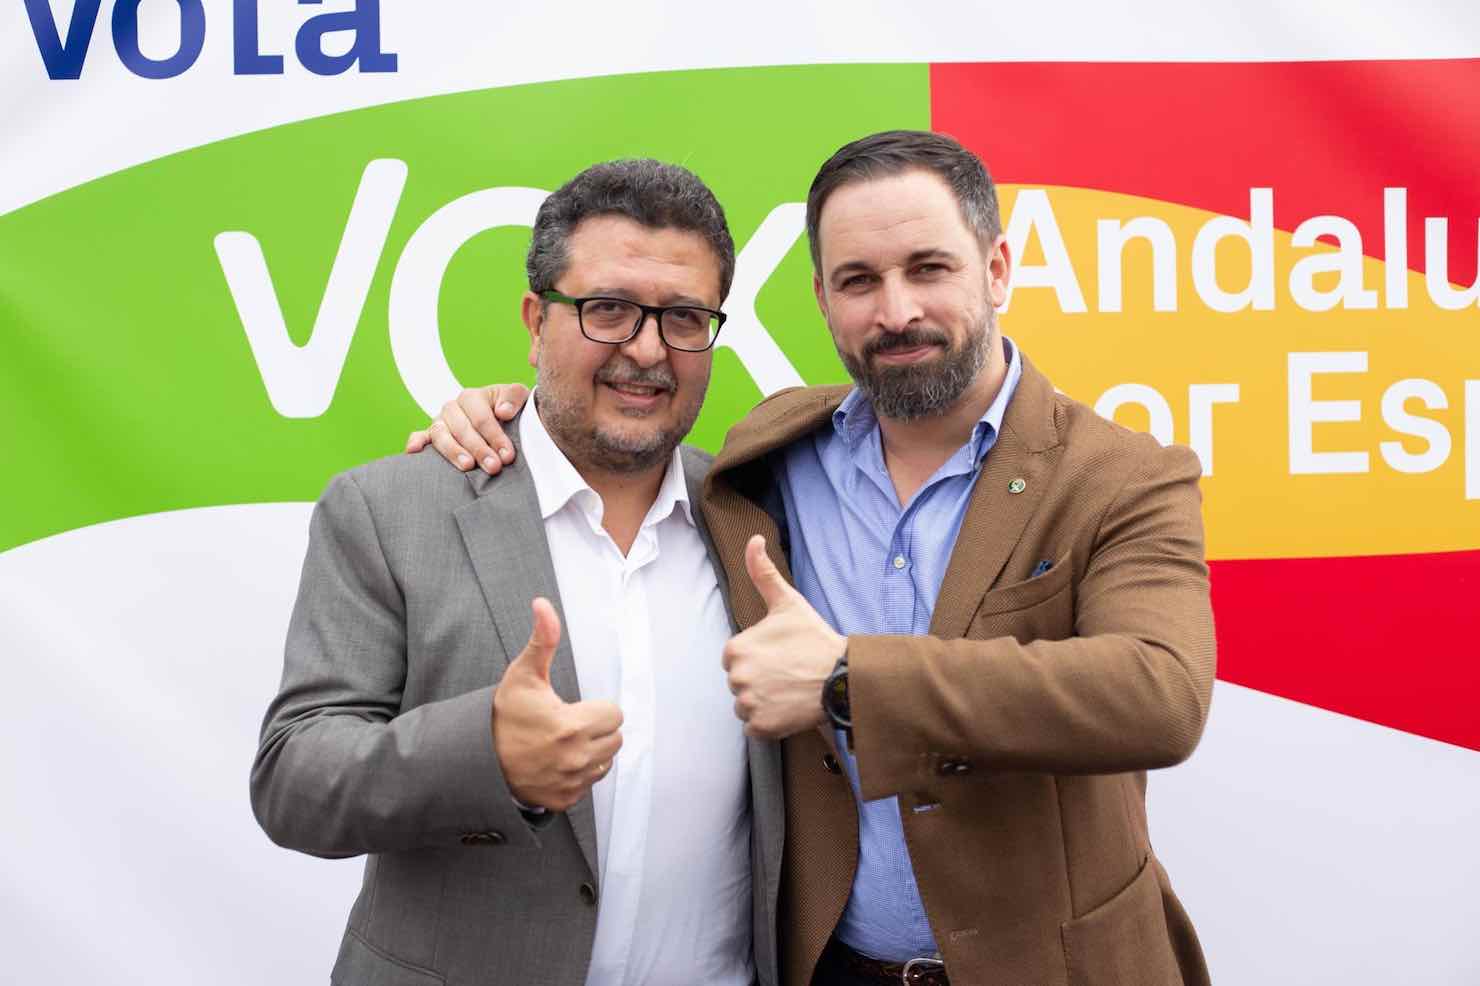 El ex presidente del grupo parlamentario de Vox, Francisco Serrano, junto al líder del partido, Santiago Abascal. FOTO: VOX ESPAÑA.